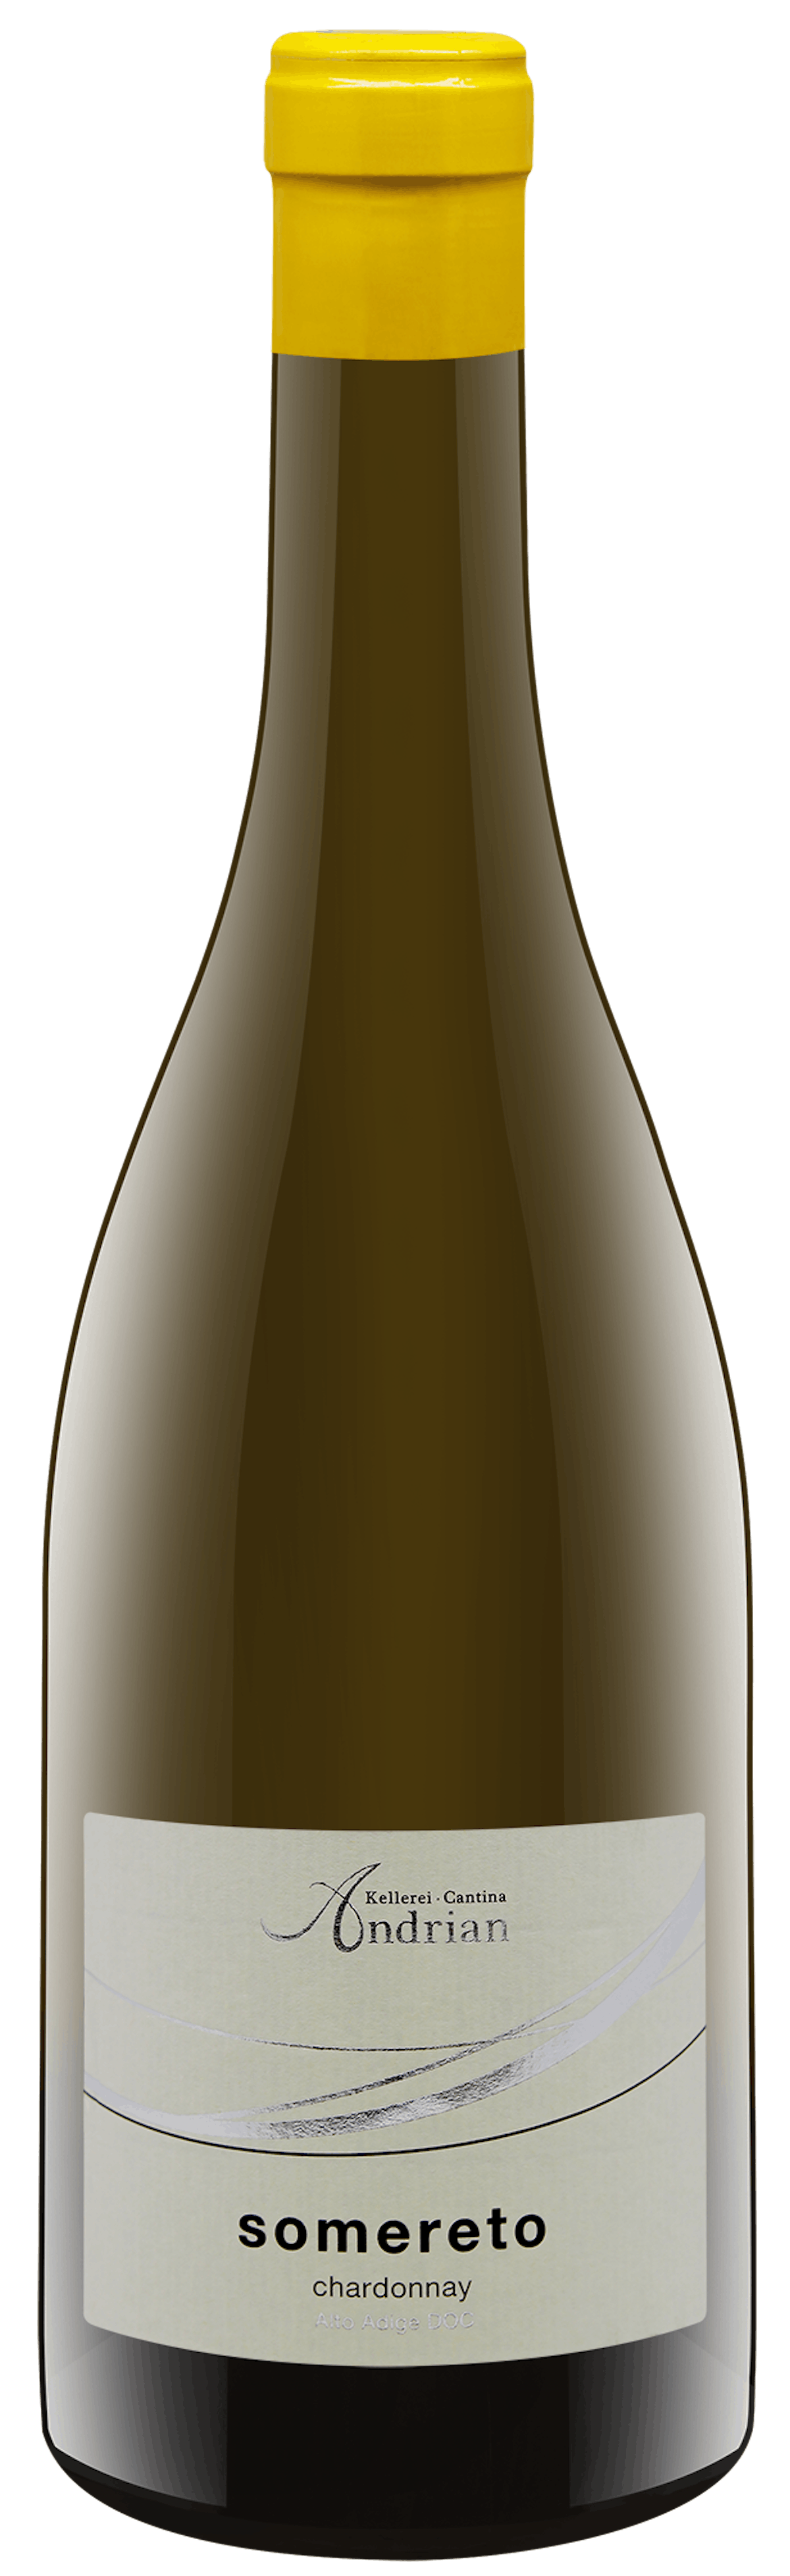 Somereto Chardonnay